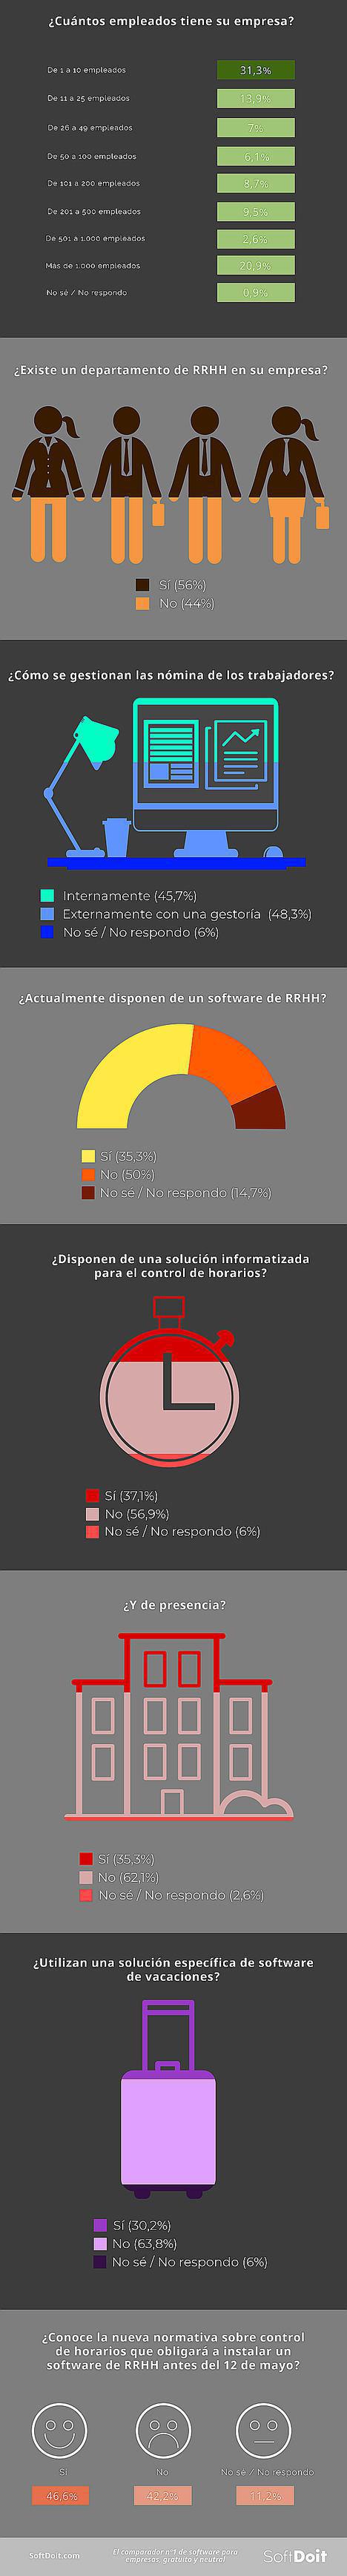 En España, sólo 1 de cada 3 empresas cumplen con el decreto ley de control de horario de sus plantillas